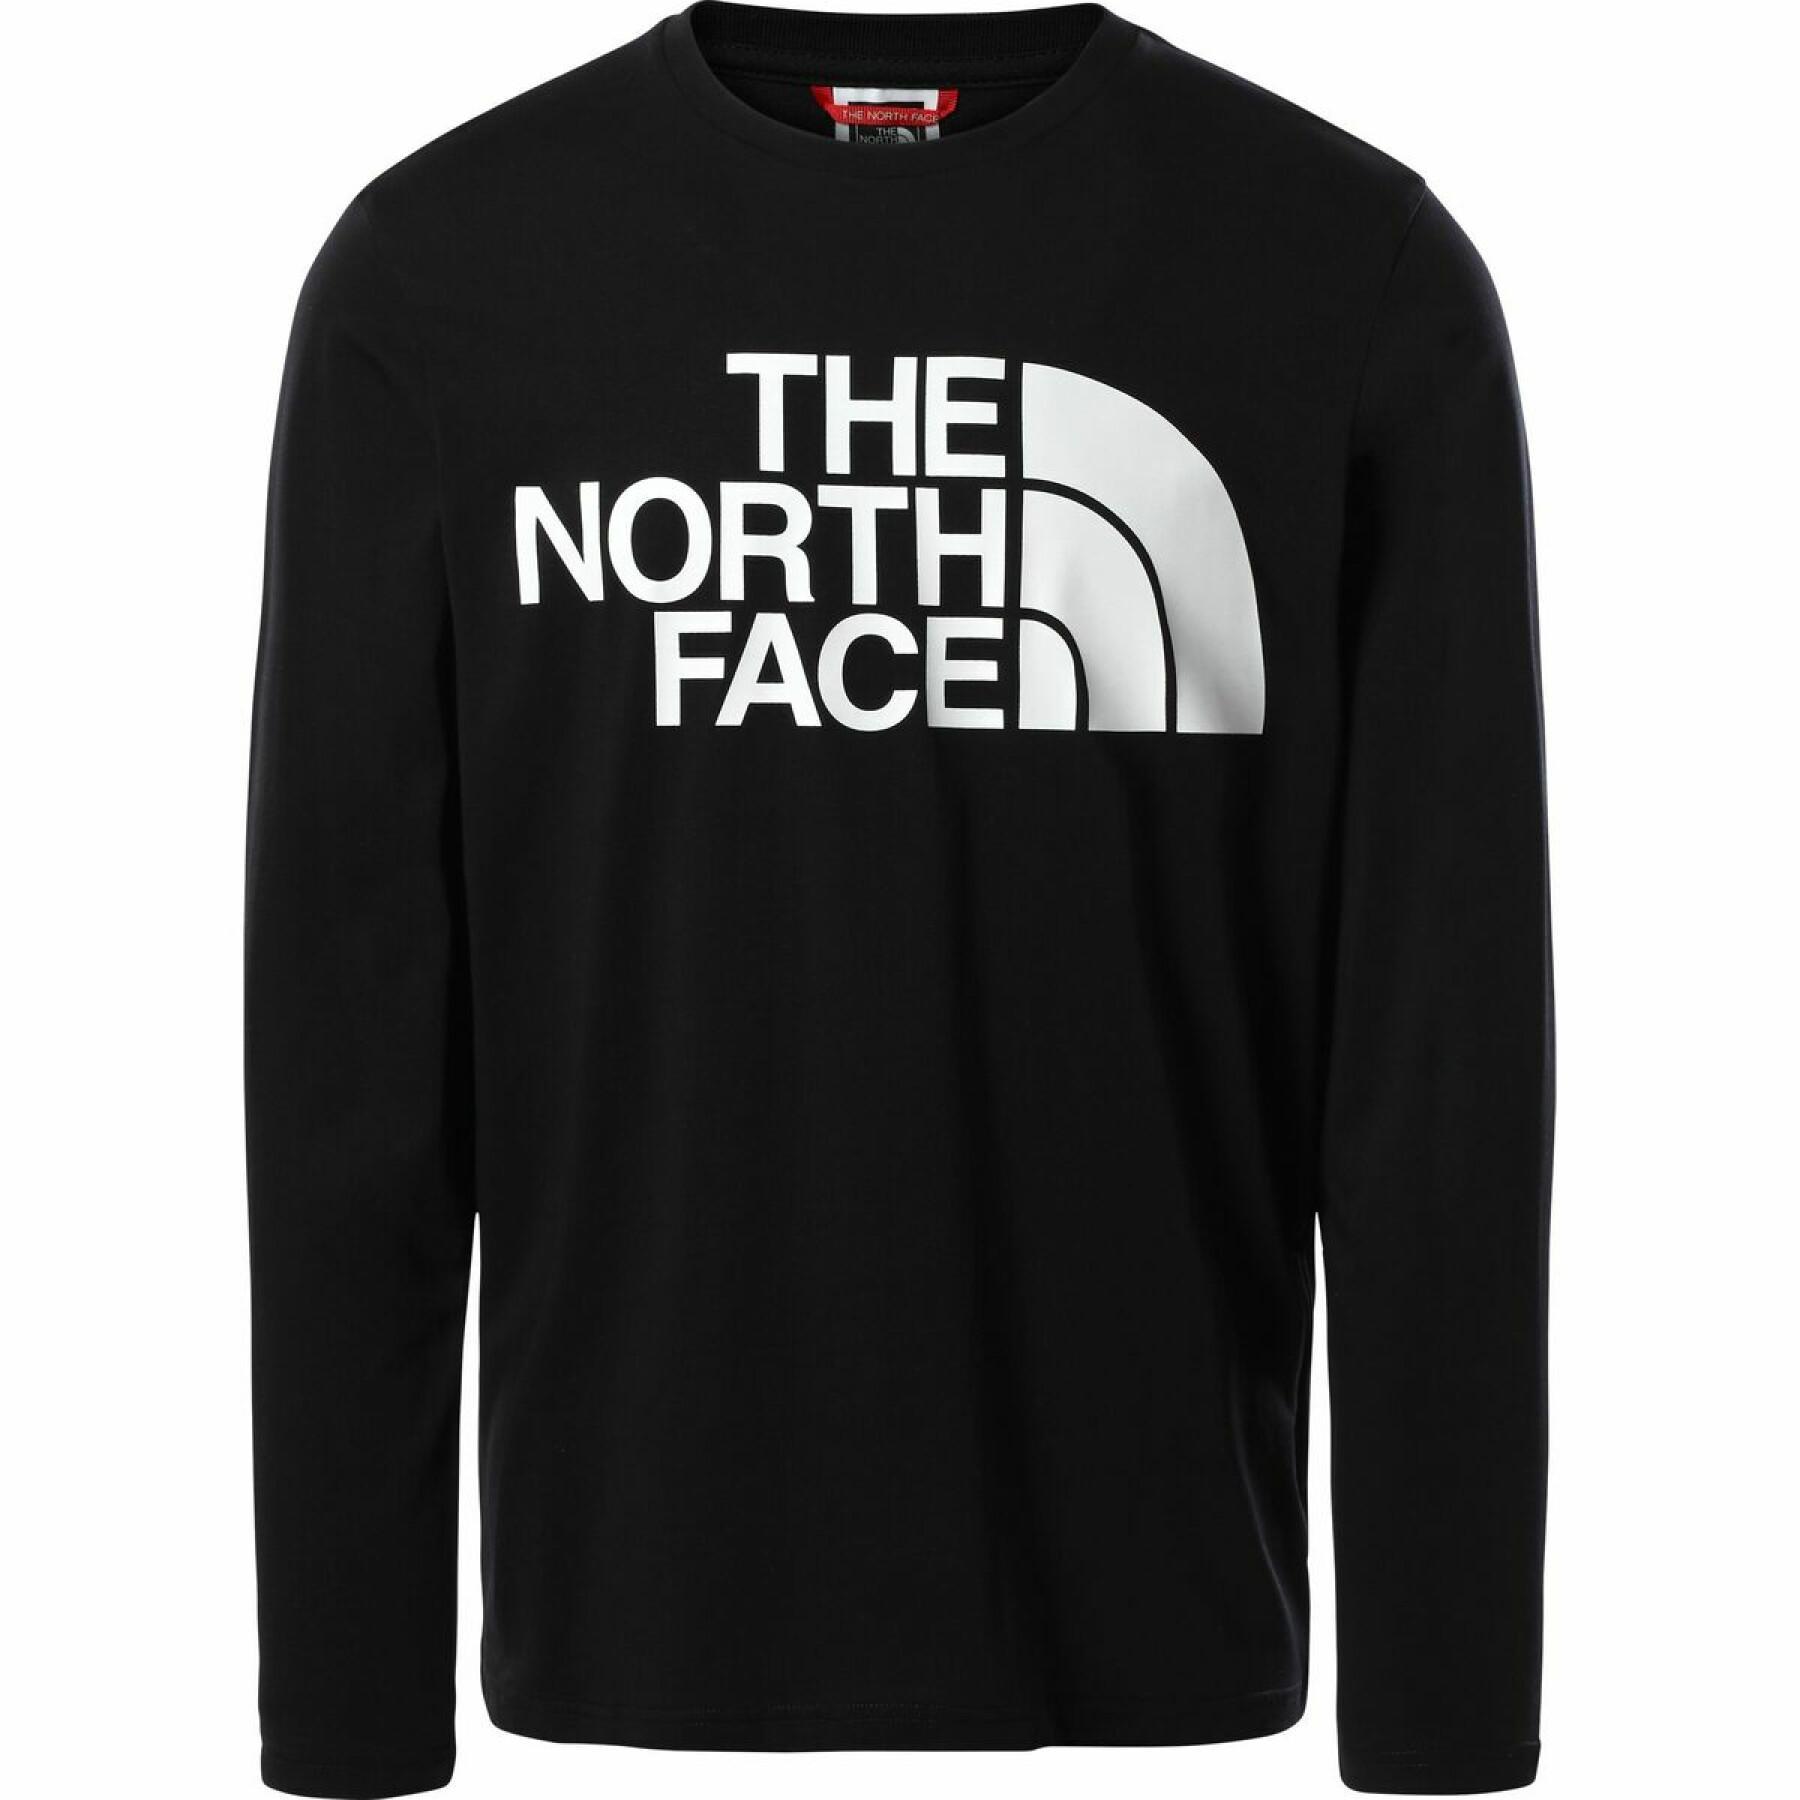 Koszulka z długim rękawem The North Face Standard Collar